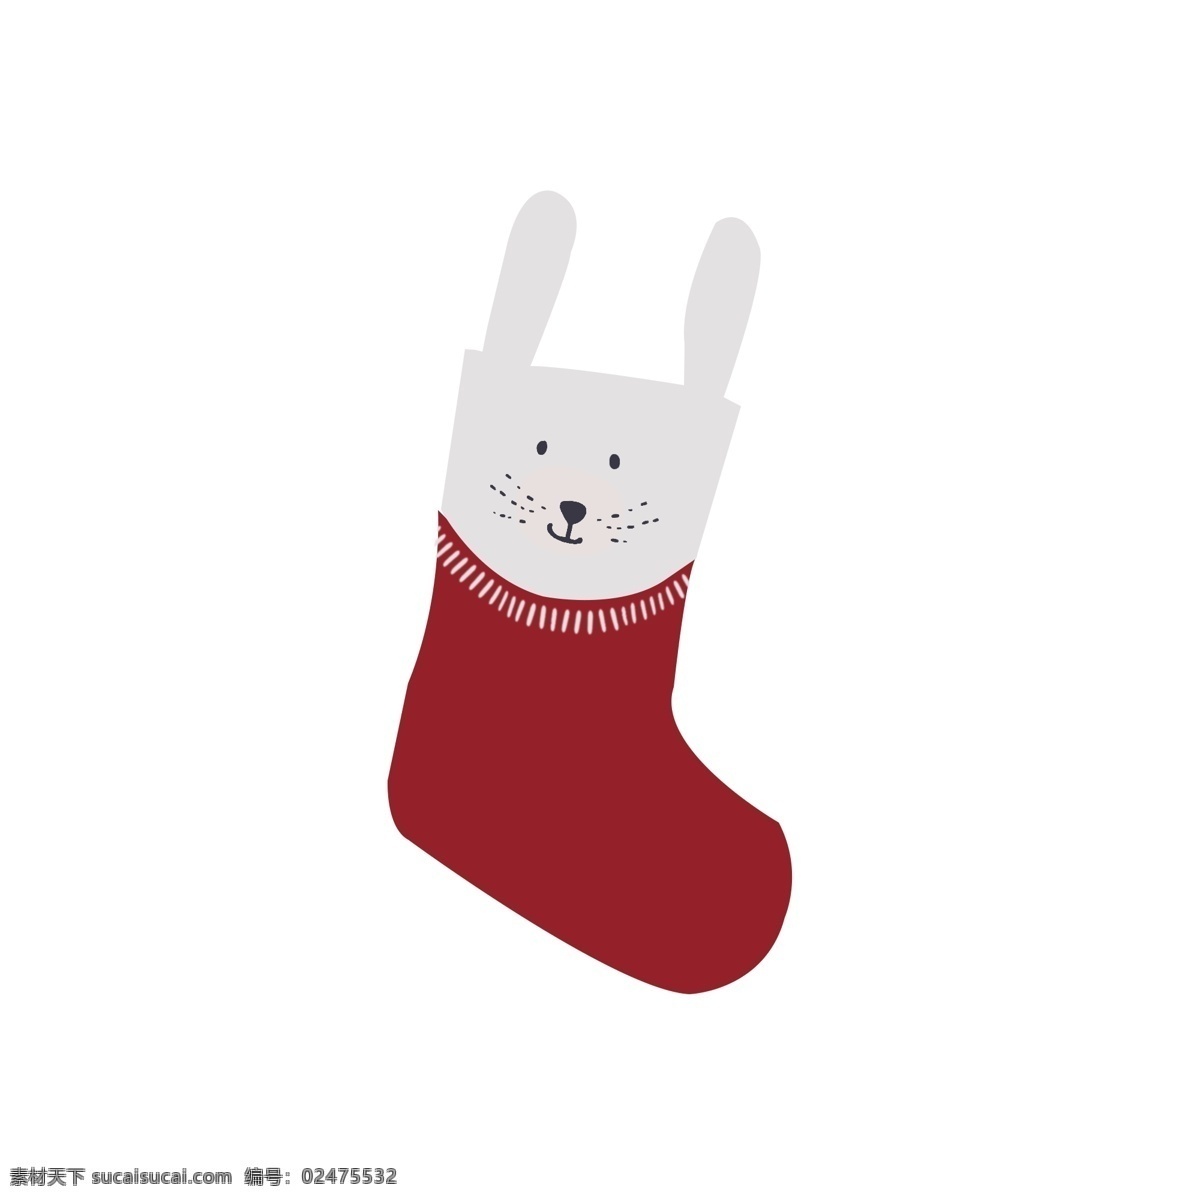 手绘 圣诞 袜 免 抠 圣诞袜 袜子 手绘袜子 手绘圣诞袜